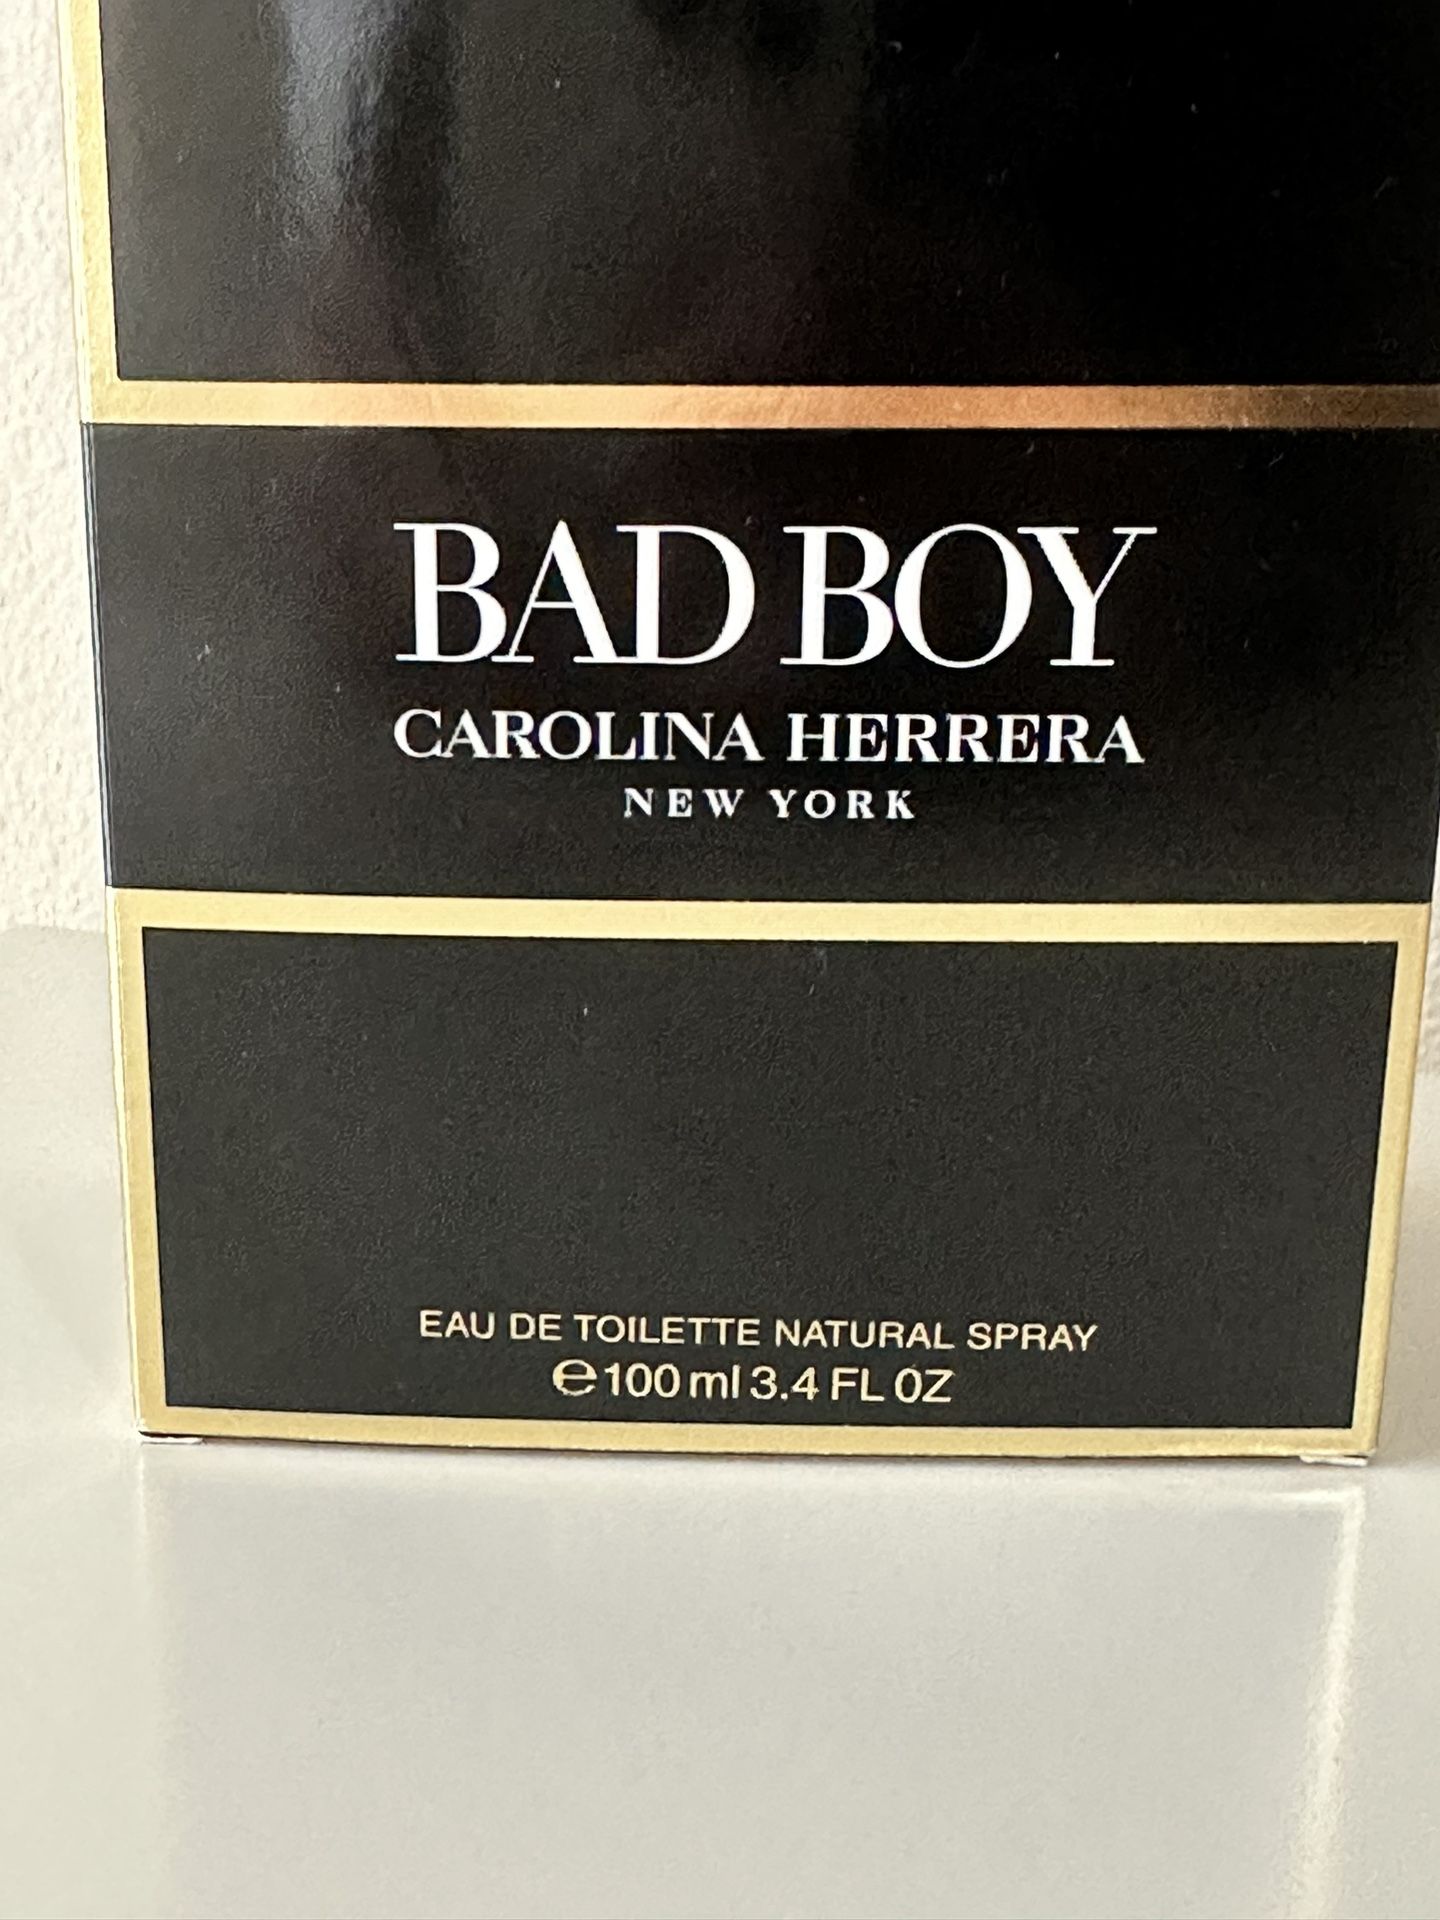 BAD BOY EDT by Carolina Herrera